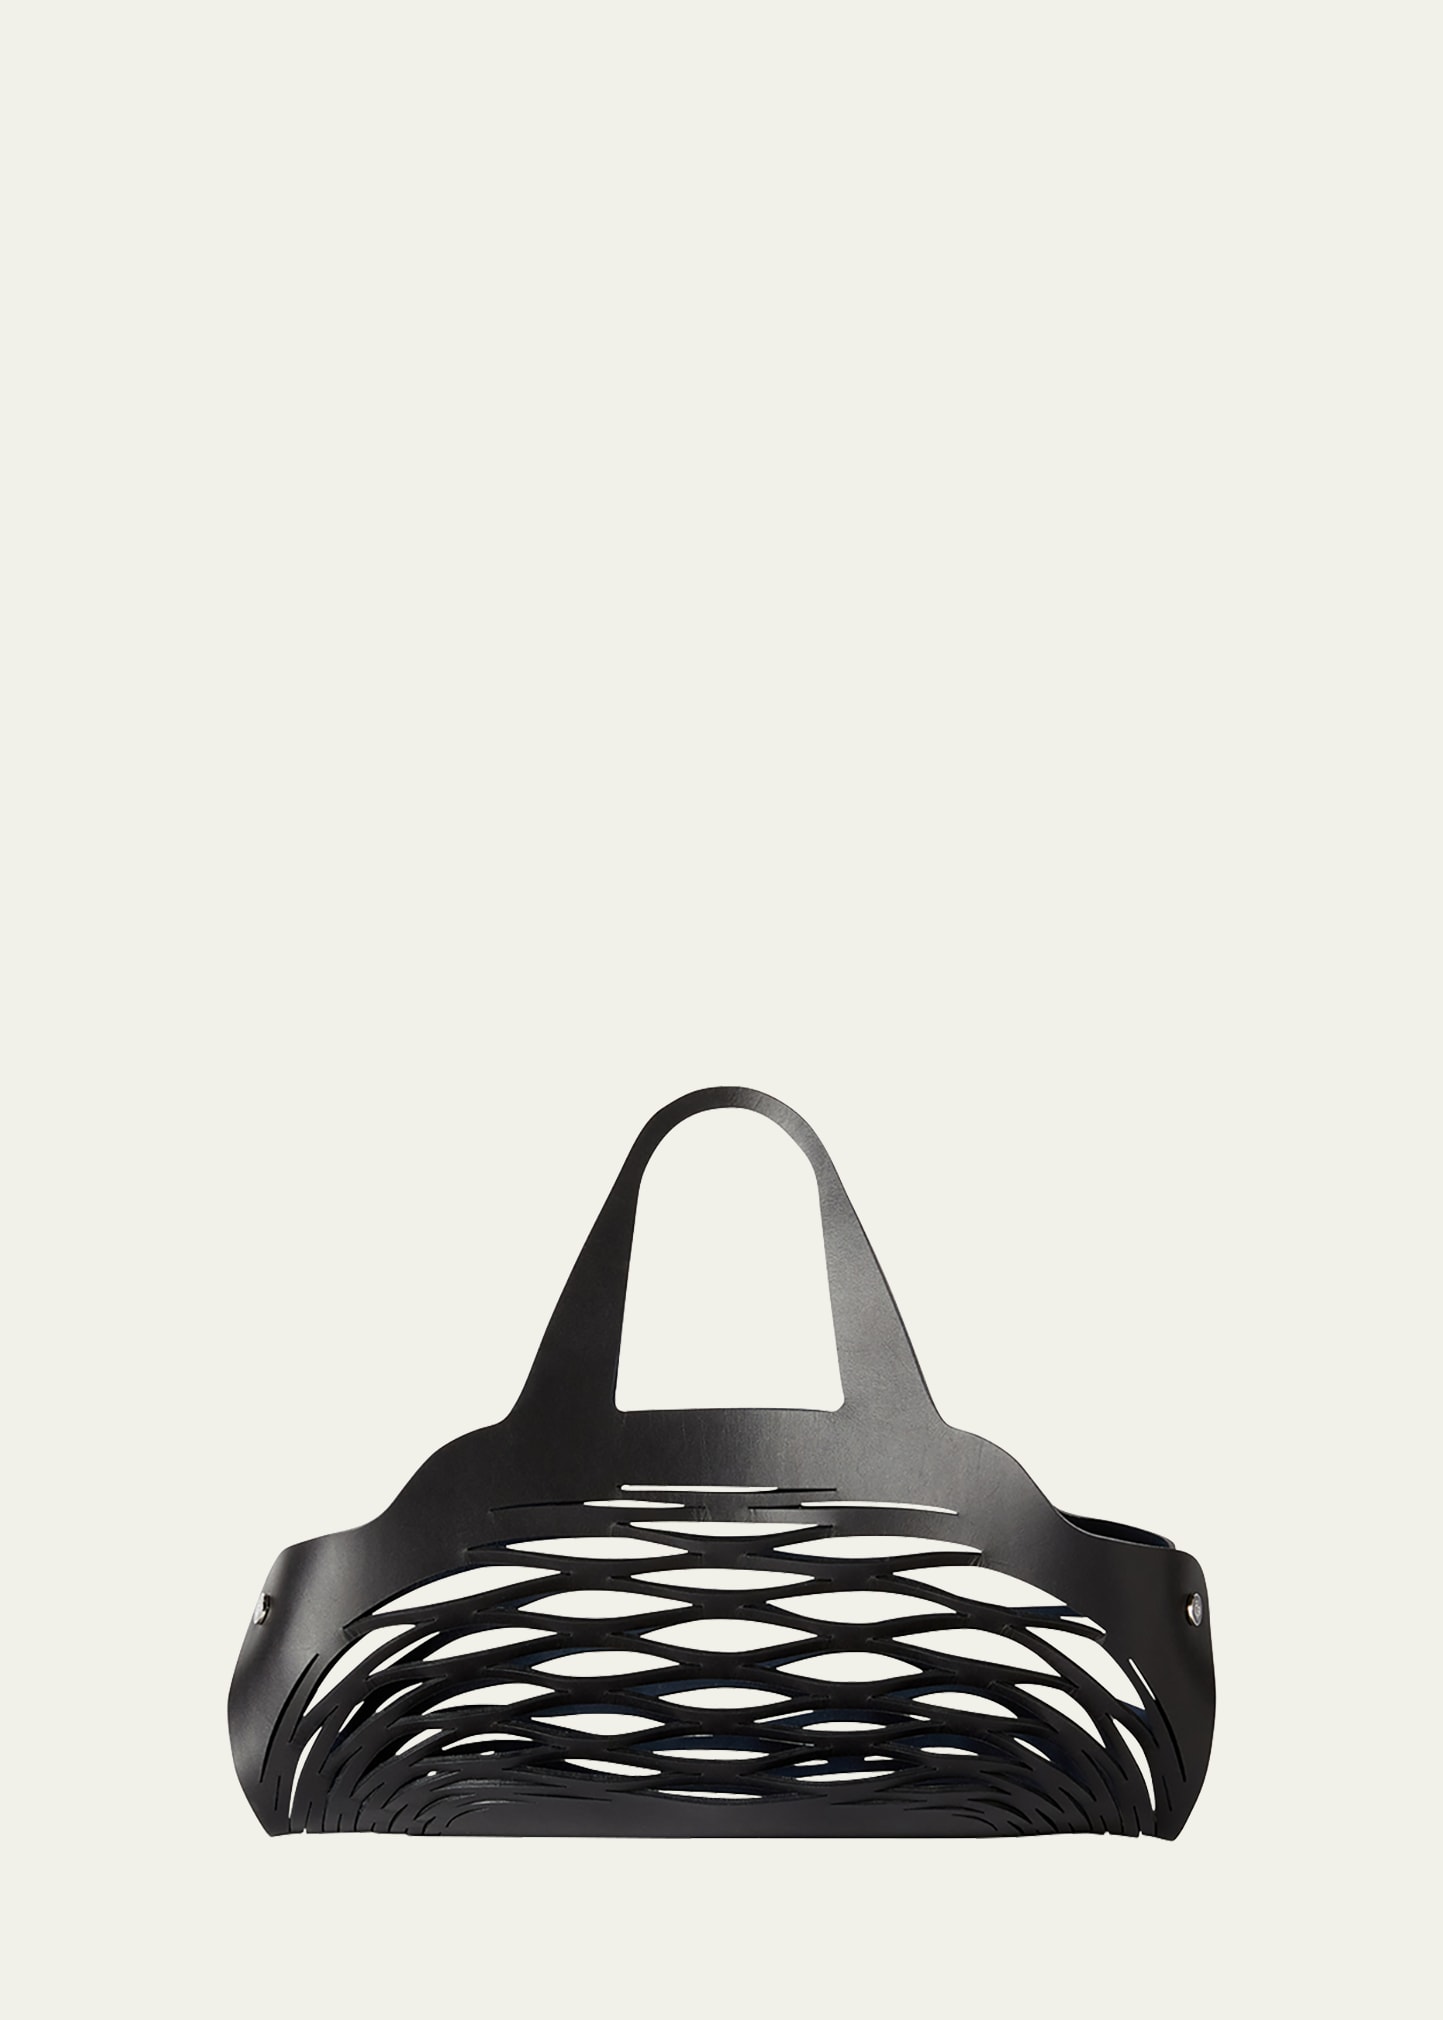 Loro Piana Sesia Summer Shopper Leather Bag